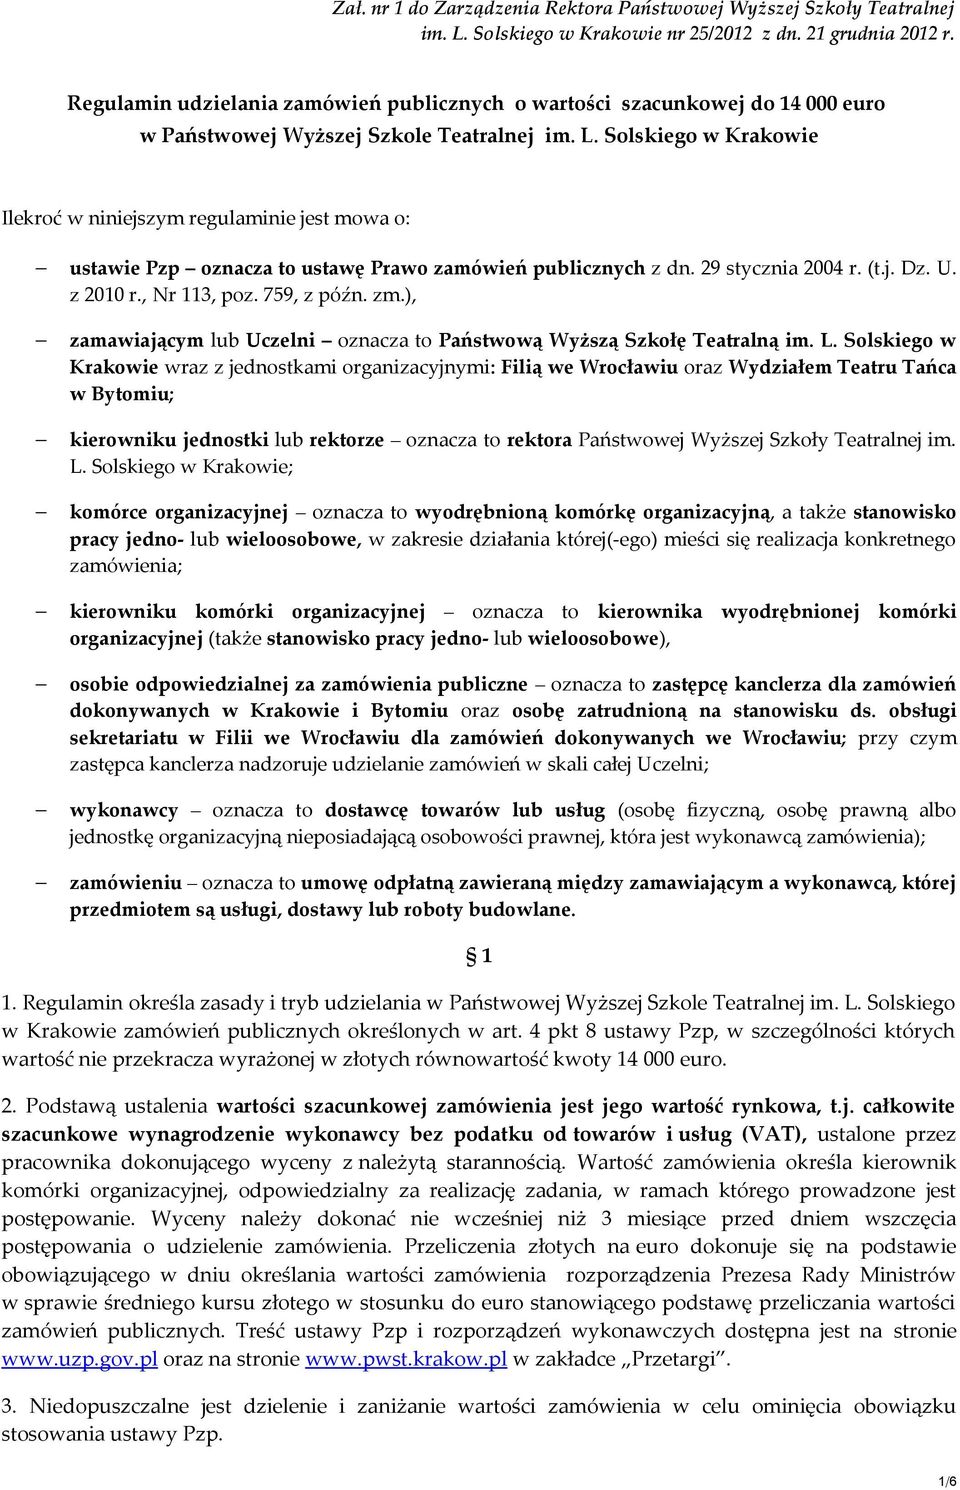 Solskiego w Krakowie Ilekroć w niniejszym regulaminie jest mowa o: ustawie Pzp oznacza to ustawę Prawo zamówień publicznych z dn. 29 stycznia 2004 r. (t.j. Dz. U. z 2010 r., Nr 113, poz. 759, z późn.